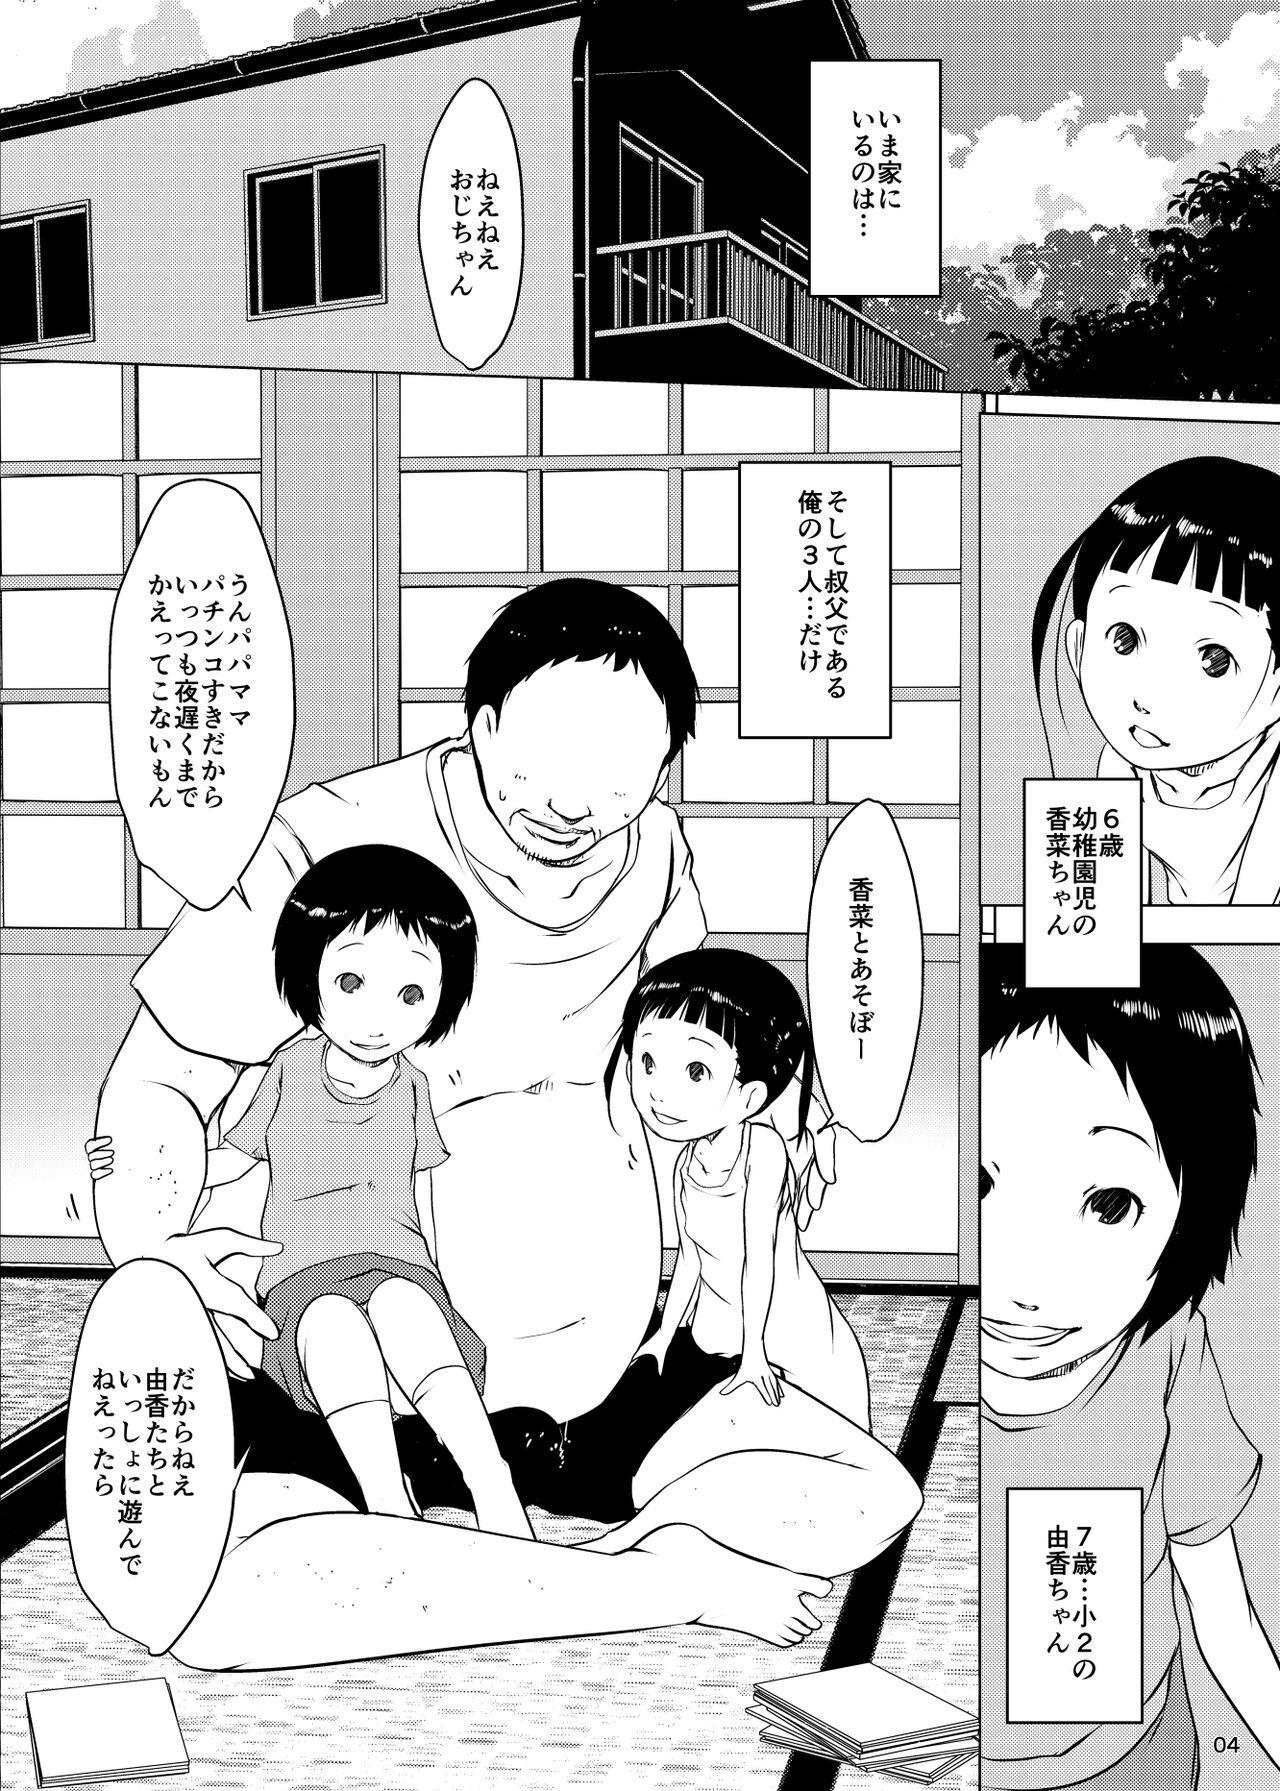 Bubble Butt Jian Hassei Re:05 + Jian Hassei Puni Pedo Kindergarten 2022 Futanari - Picture 3